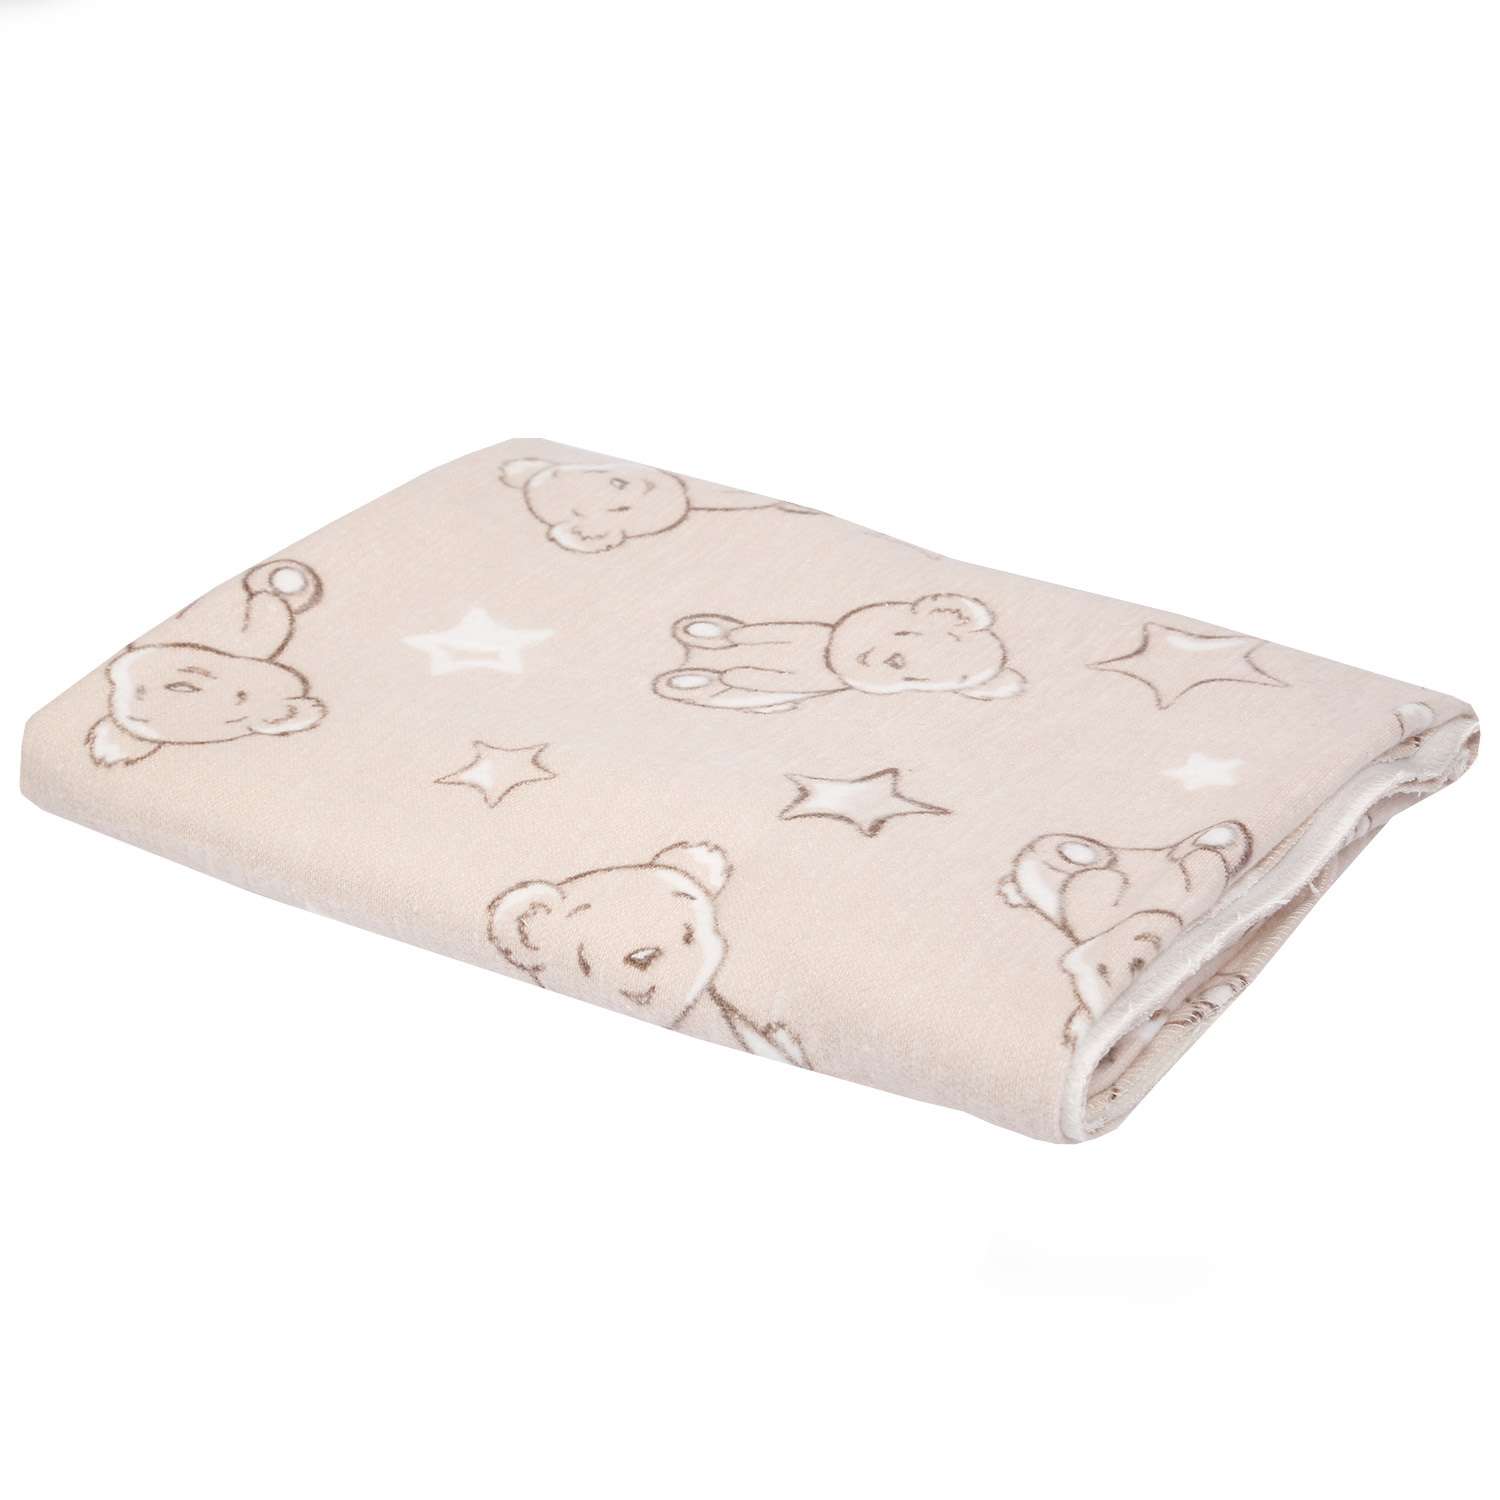 Одеяло Babyton байковое Мишка со звездами Бежевое - фото 1